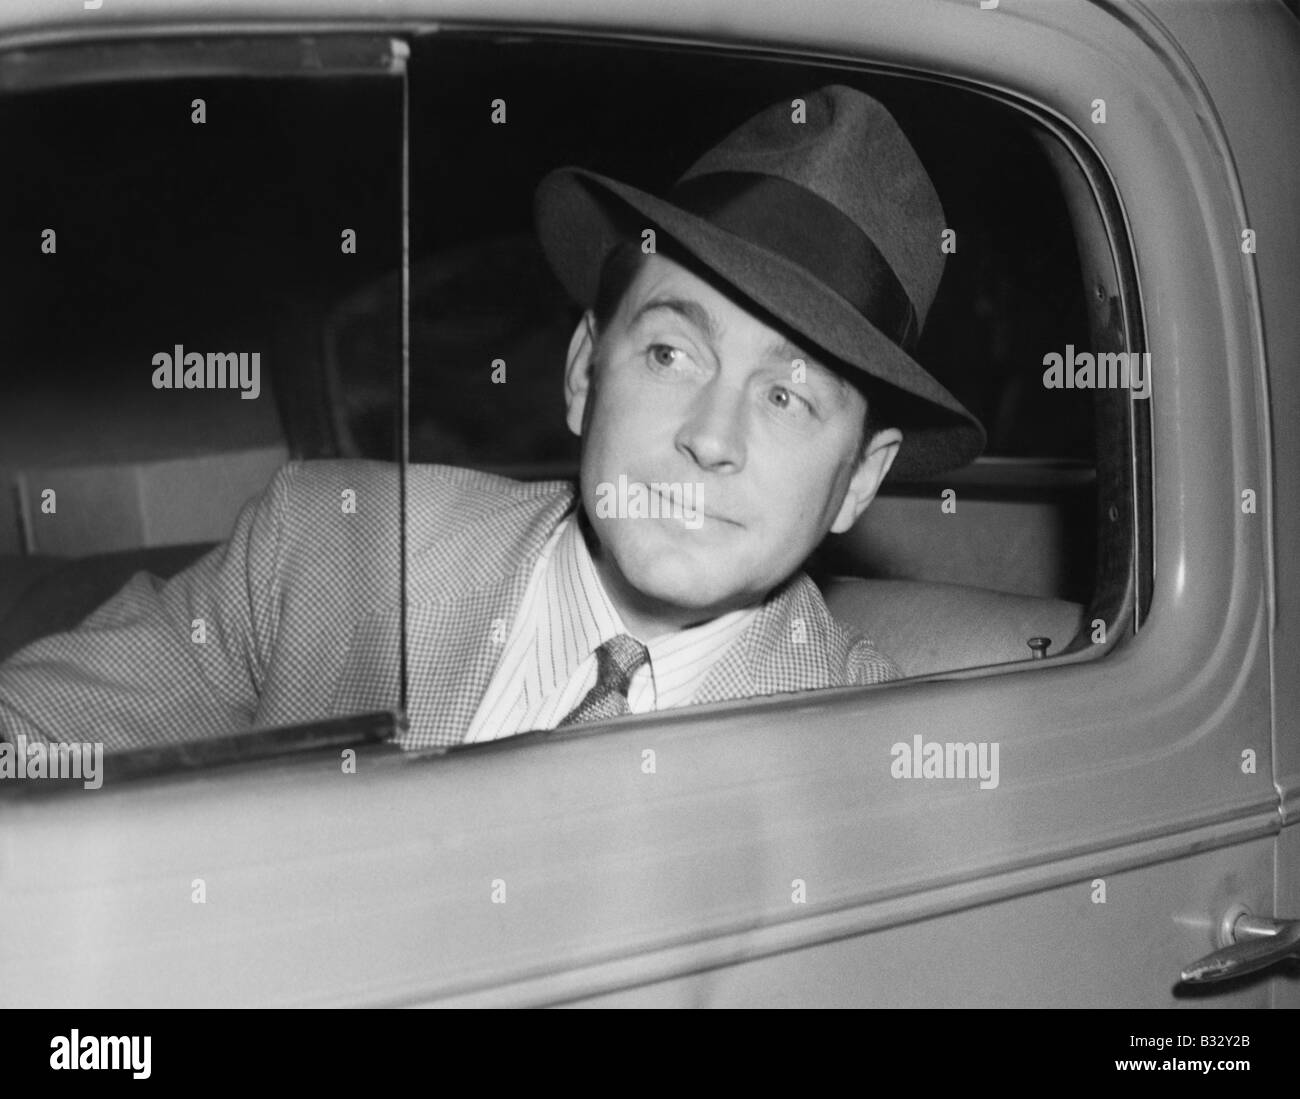 Homme assis dans une voiture en regardant par la fenêtre Banque D'Images